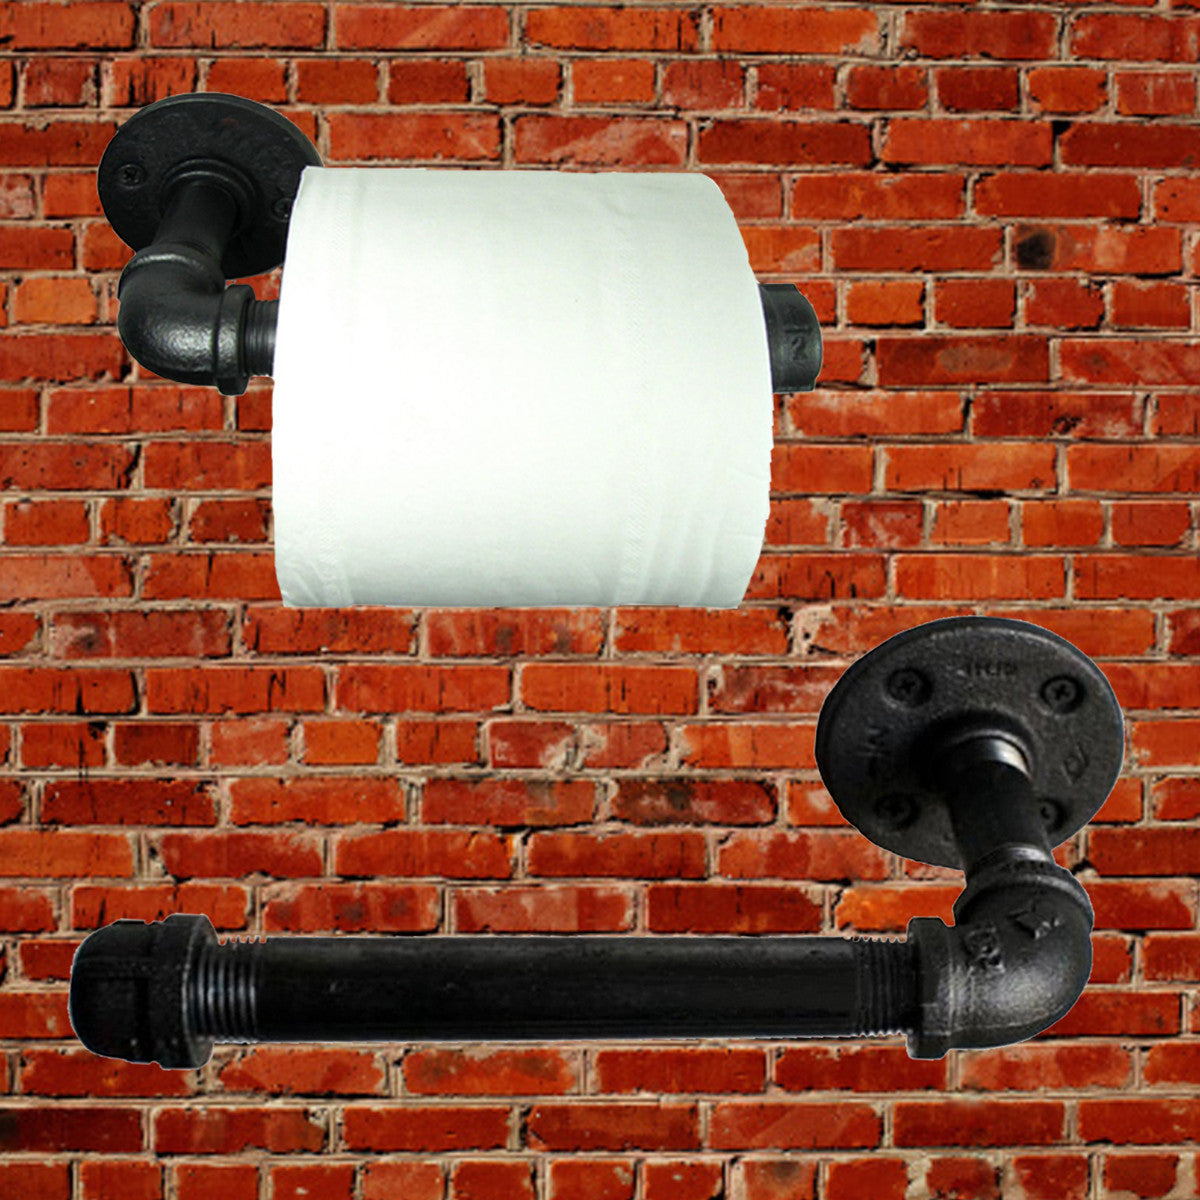 Industrial  Pipeline Vintage Paper Towel Rack Bathroom  Wall Mount Toilet Paper Holder